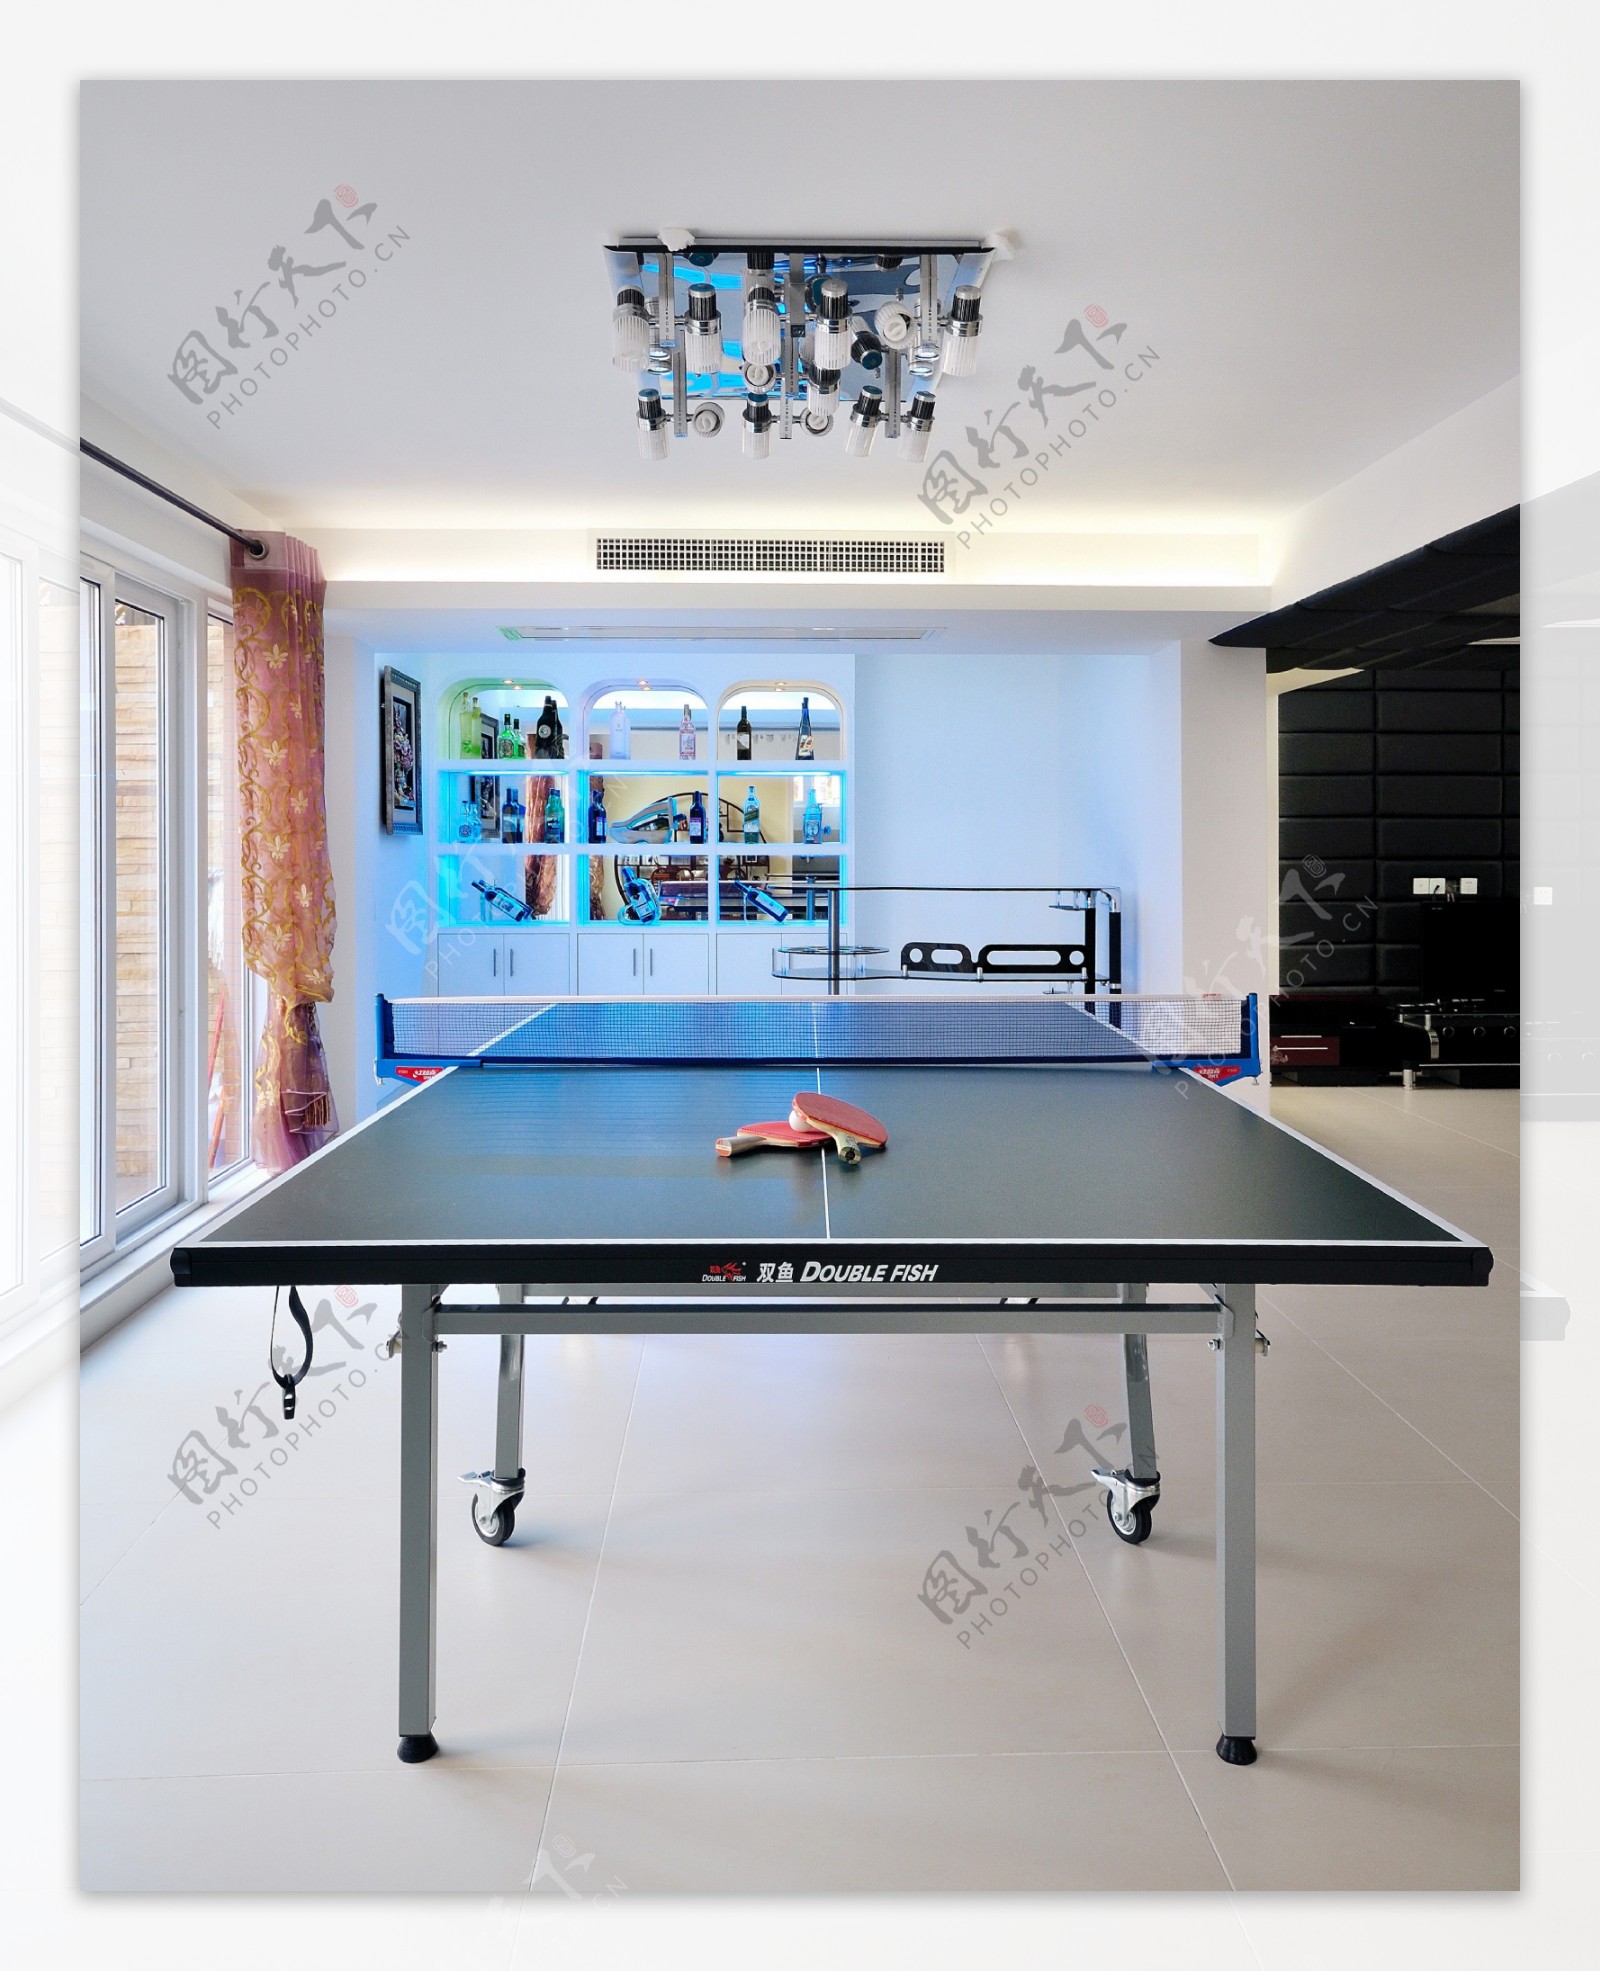 欧式室内休闲乒乓球桌设计图